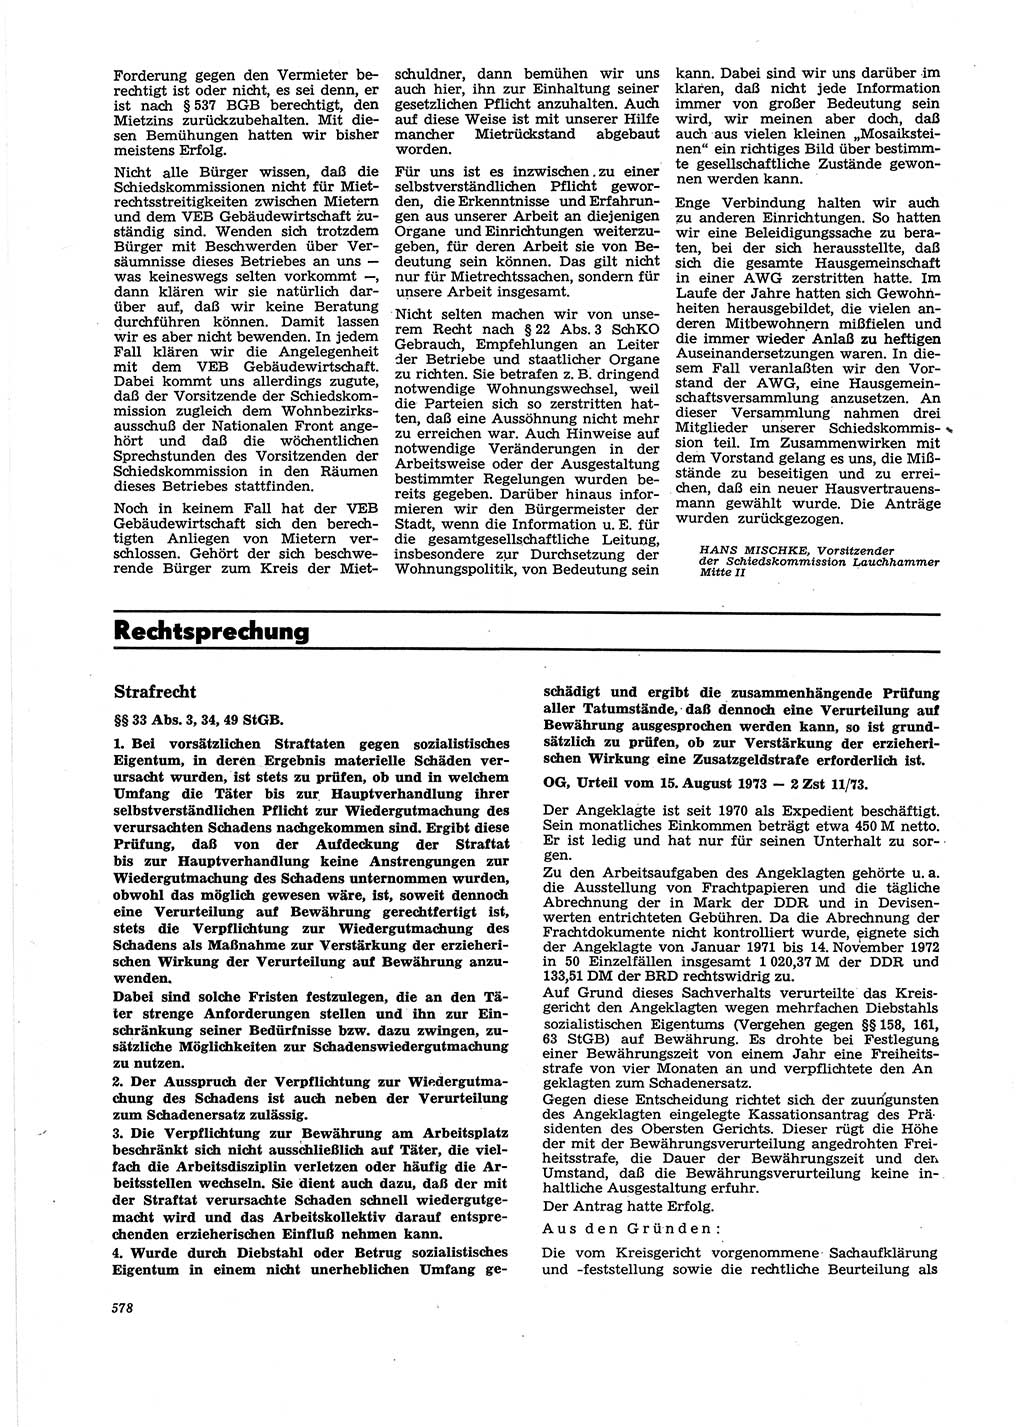 Neue Justiz (NJ), Zeitschrift für Recht und Rechtswissenschaft [Deutsche Demokratische Republik (DDR)], 27. Jahrgang 1973, Seite 578 (NJ DDR 1973, S. 578)